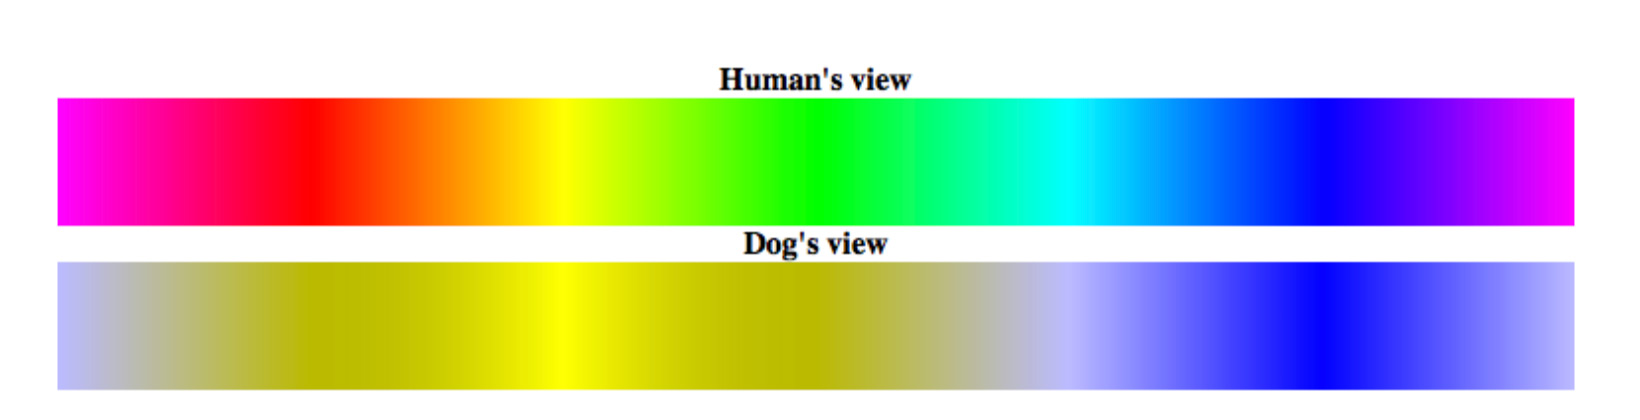 Grafico comparativo do espectro de cores da visão humana e canina. Blog do resort.